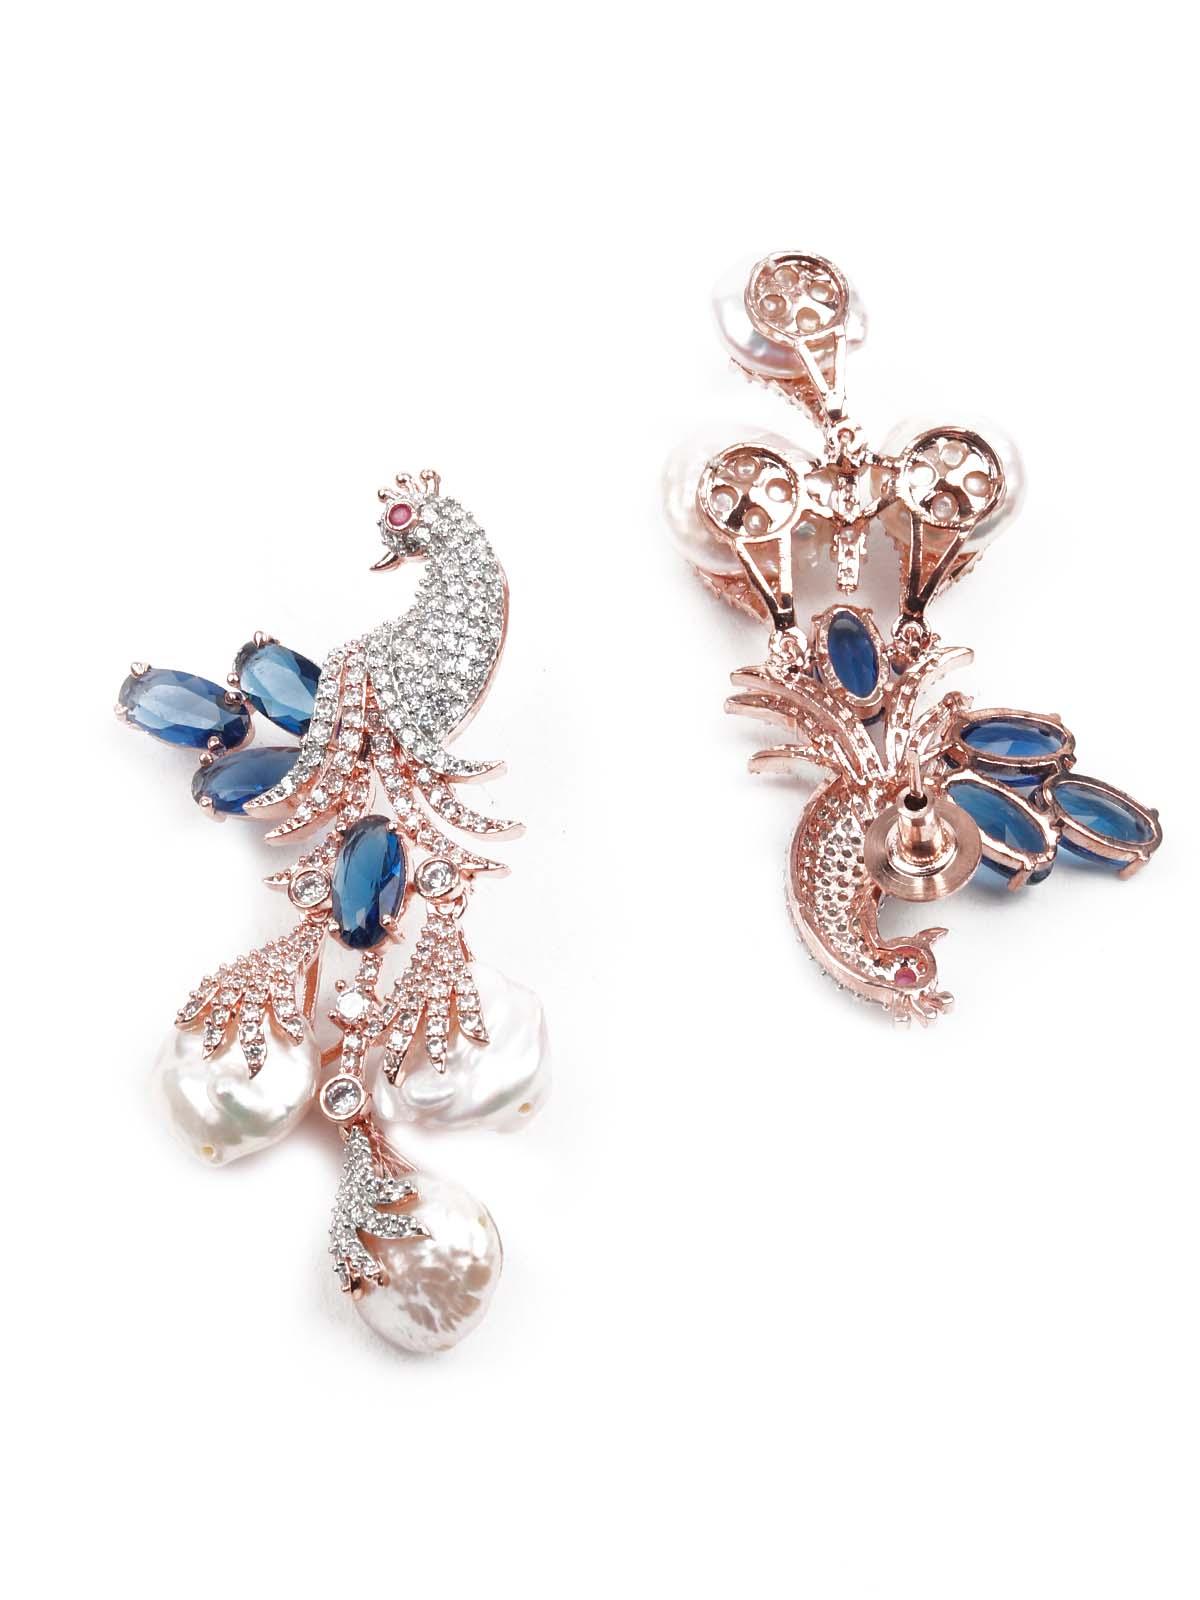 Women's Diamond Studded Royal Blue And White Peacock Earrings - Odette